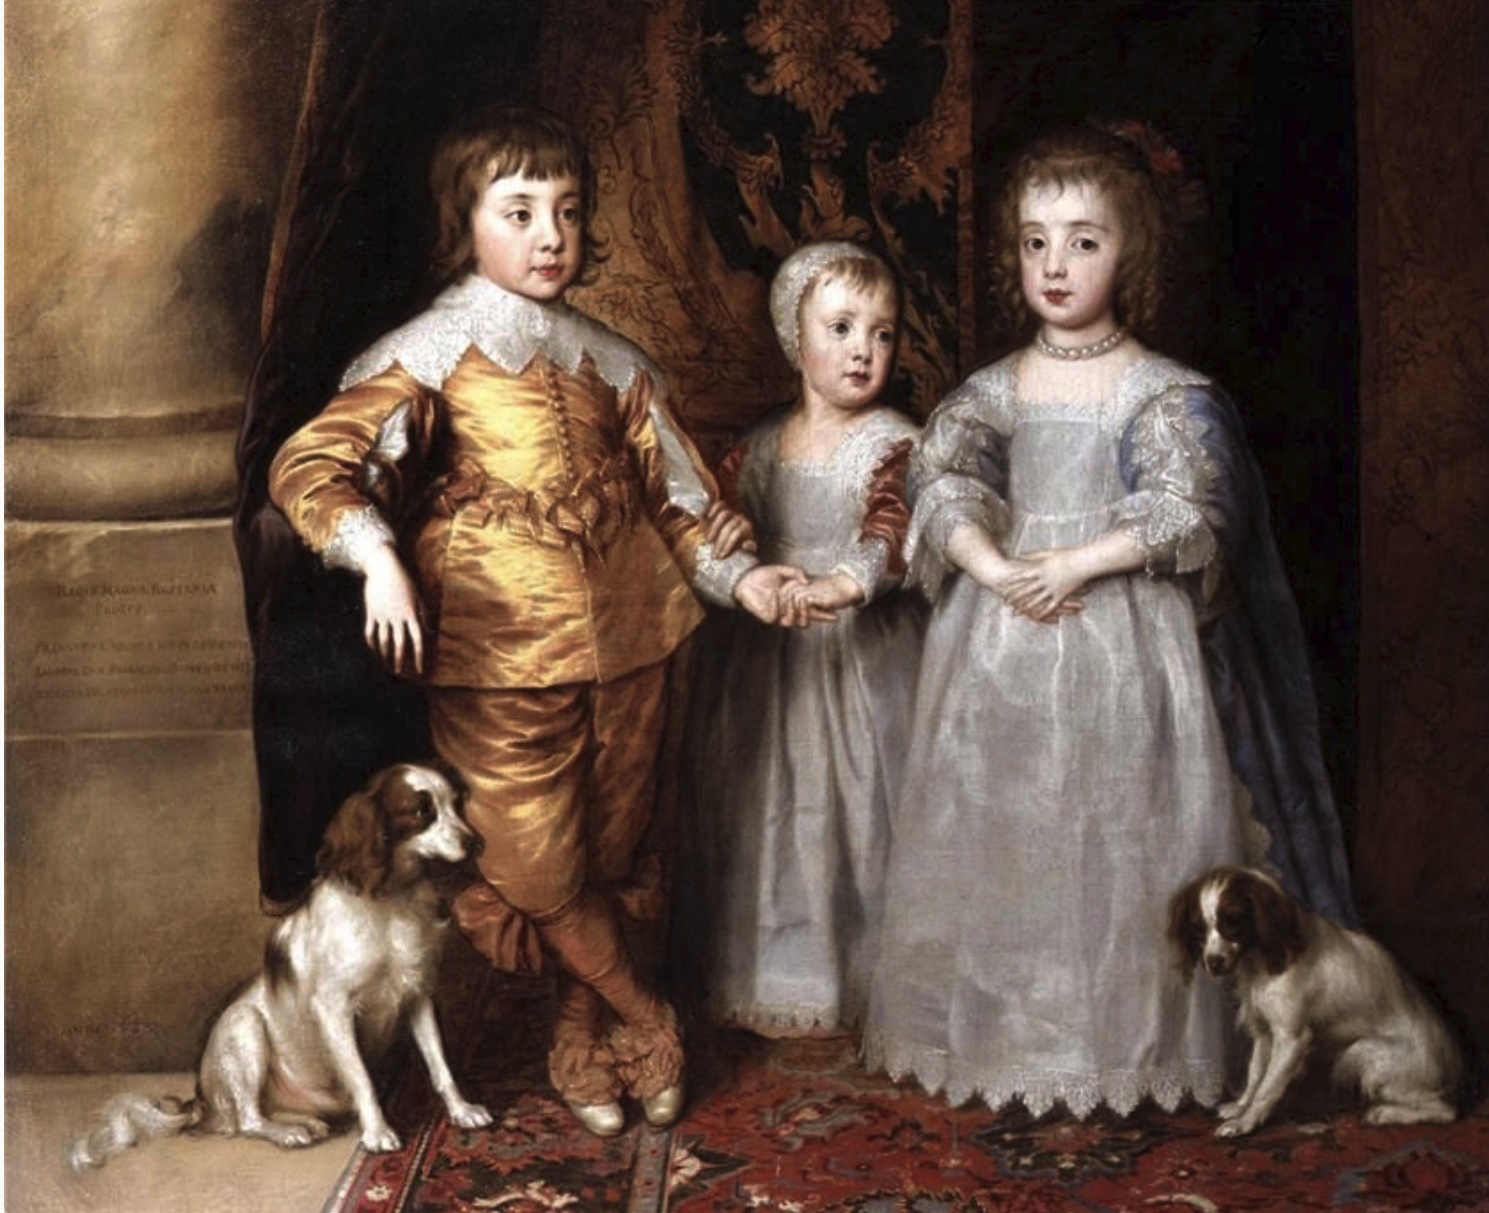 Дети Чарльз I и королева Генриетты Мария, 1637 год (художник sir Antoni van Dyck)